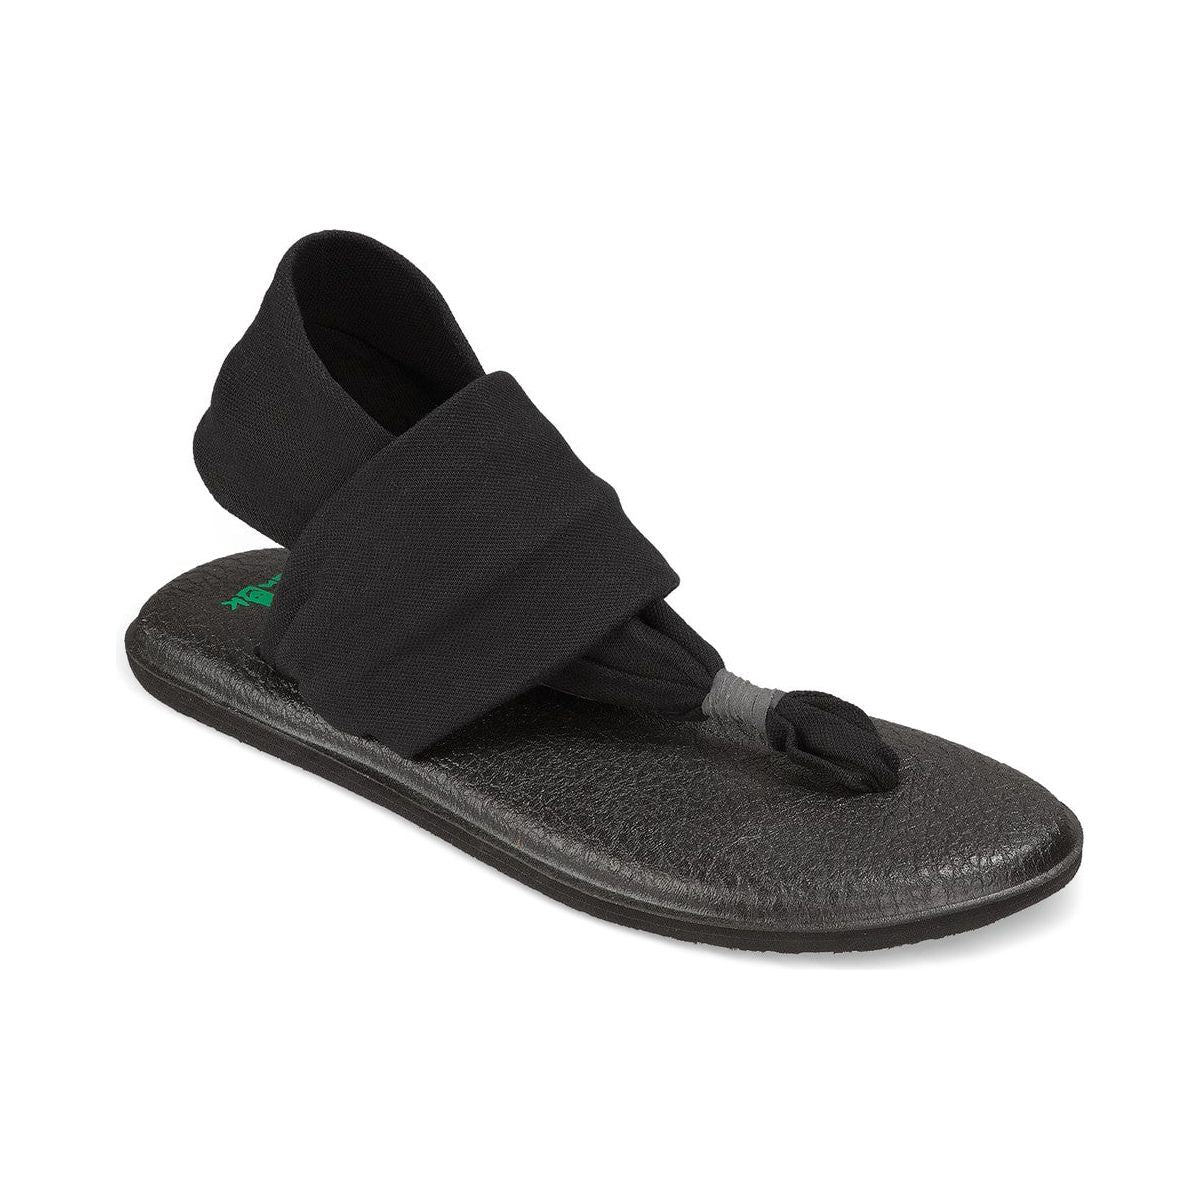 Sanuk, Shoes, Sanuk Yoga Sling 2 Sandals Size